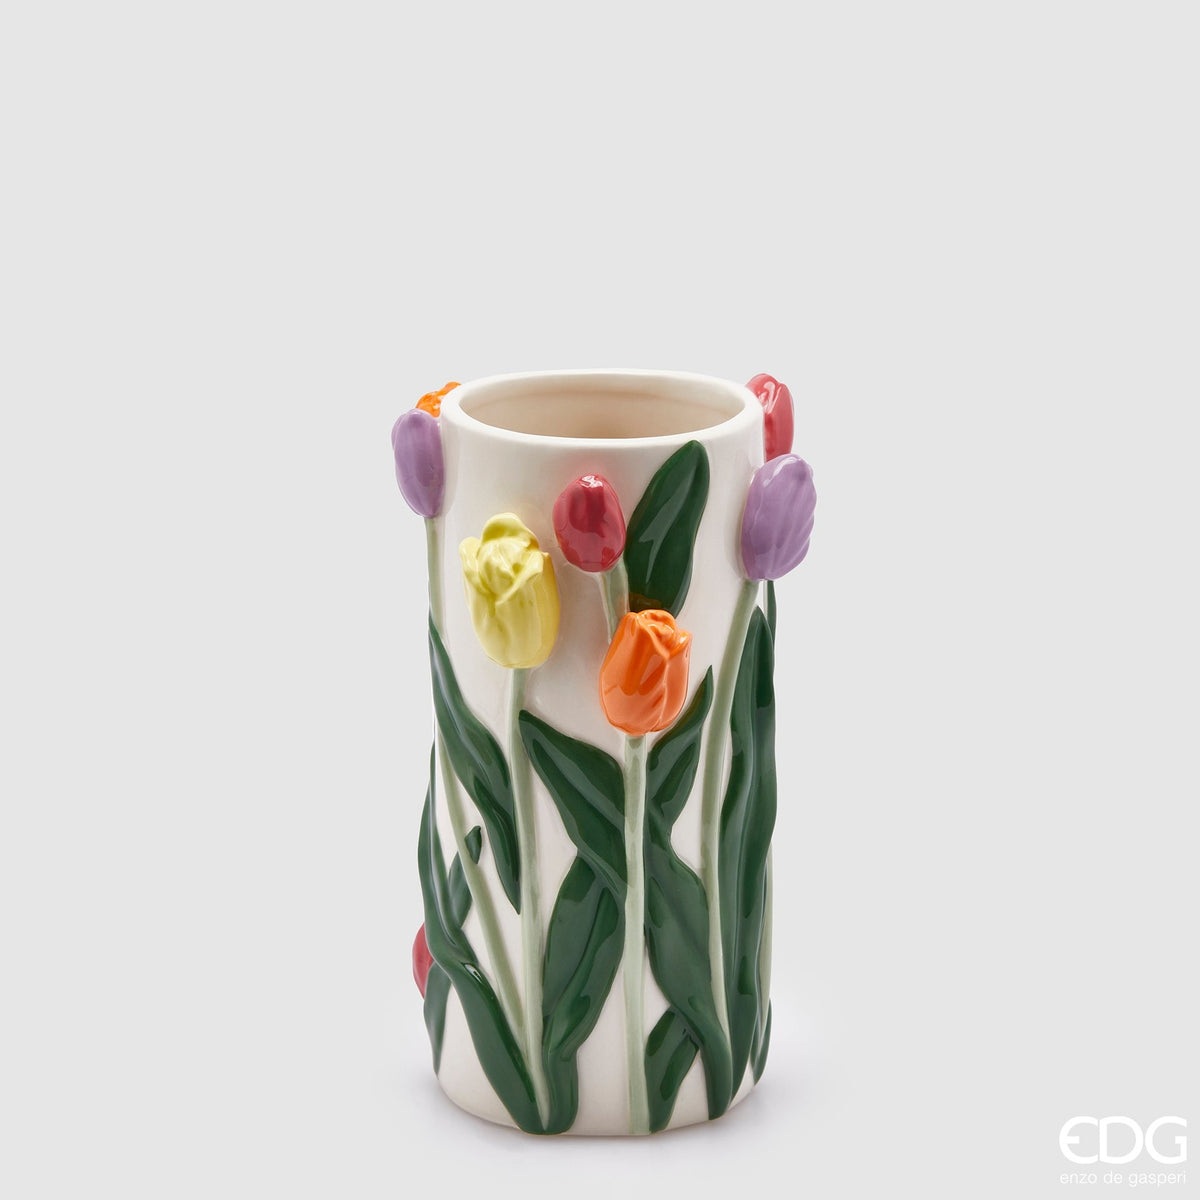 Edg - vaso con tulipani cilindro h 23cm | rohome